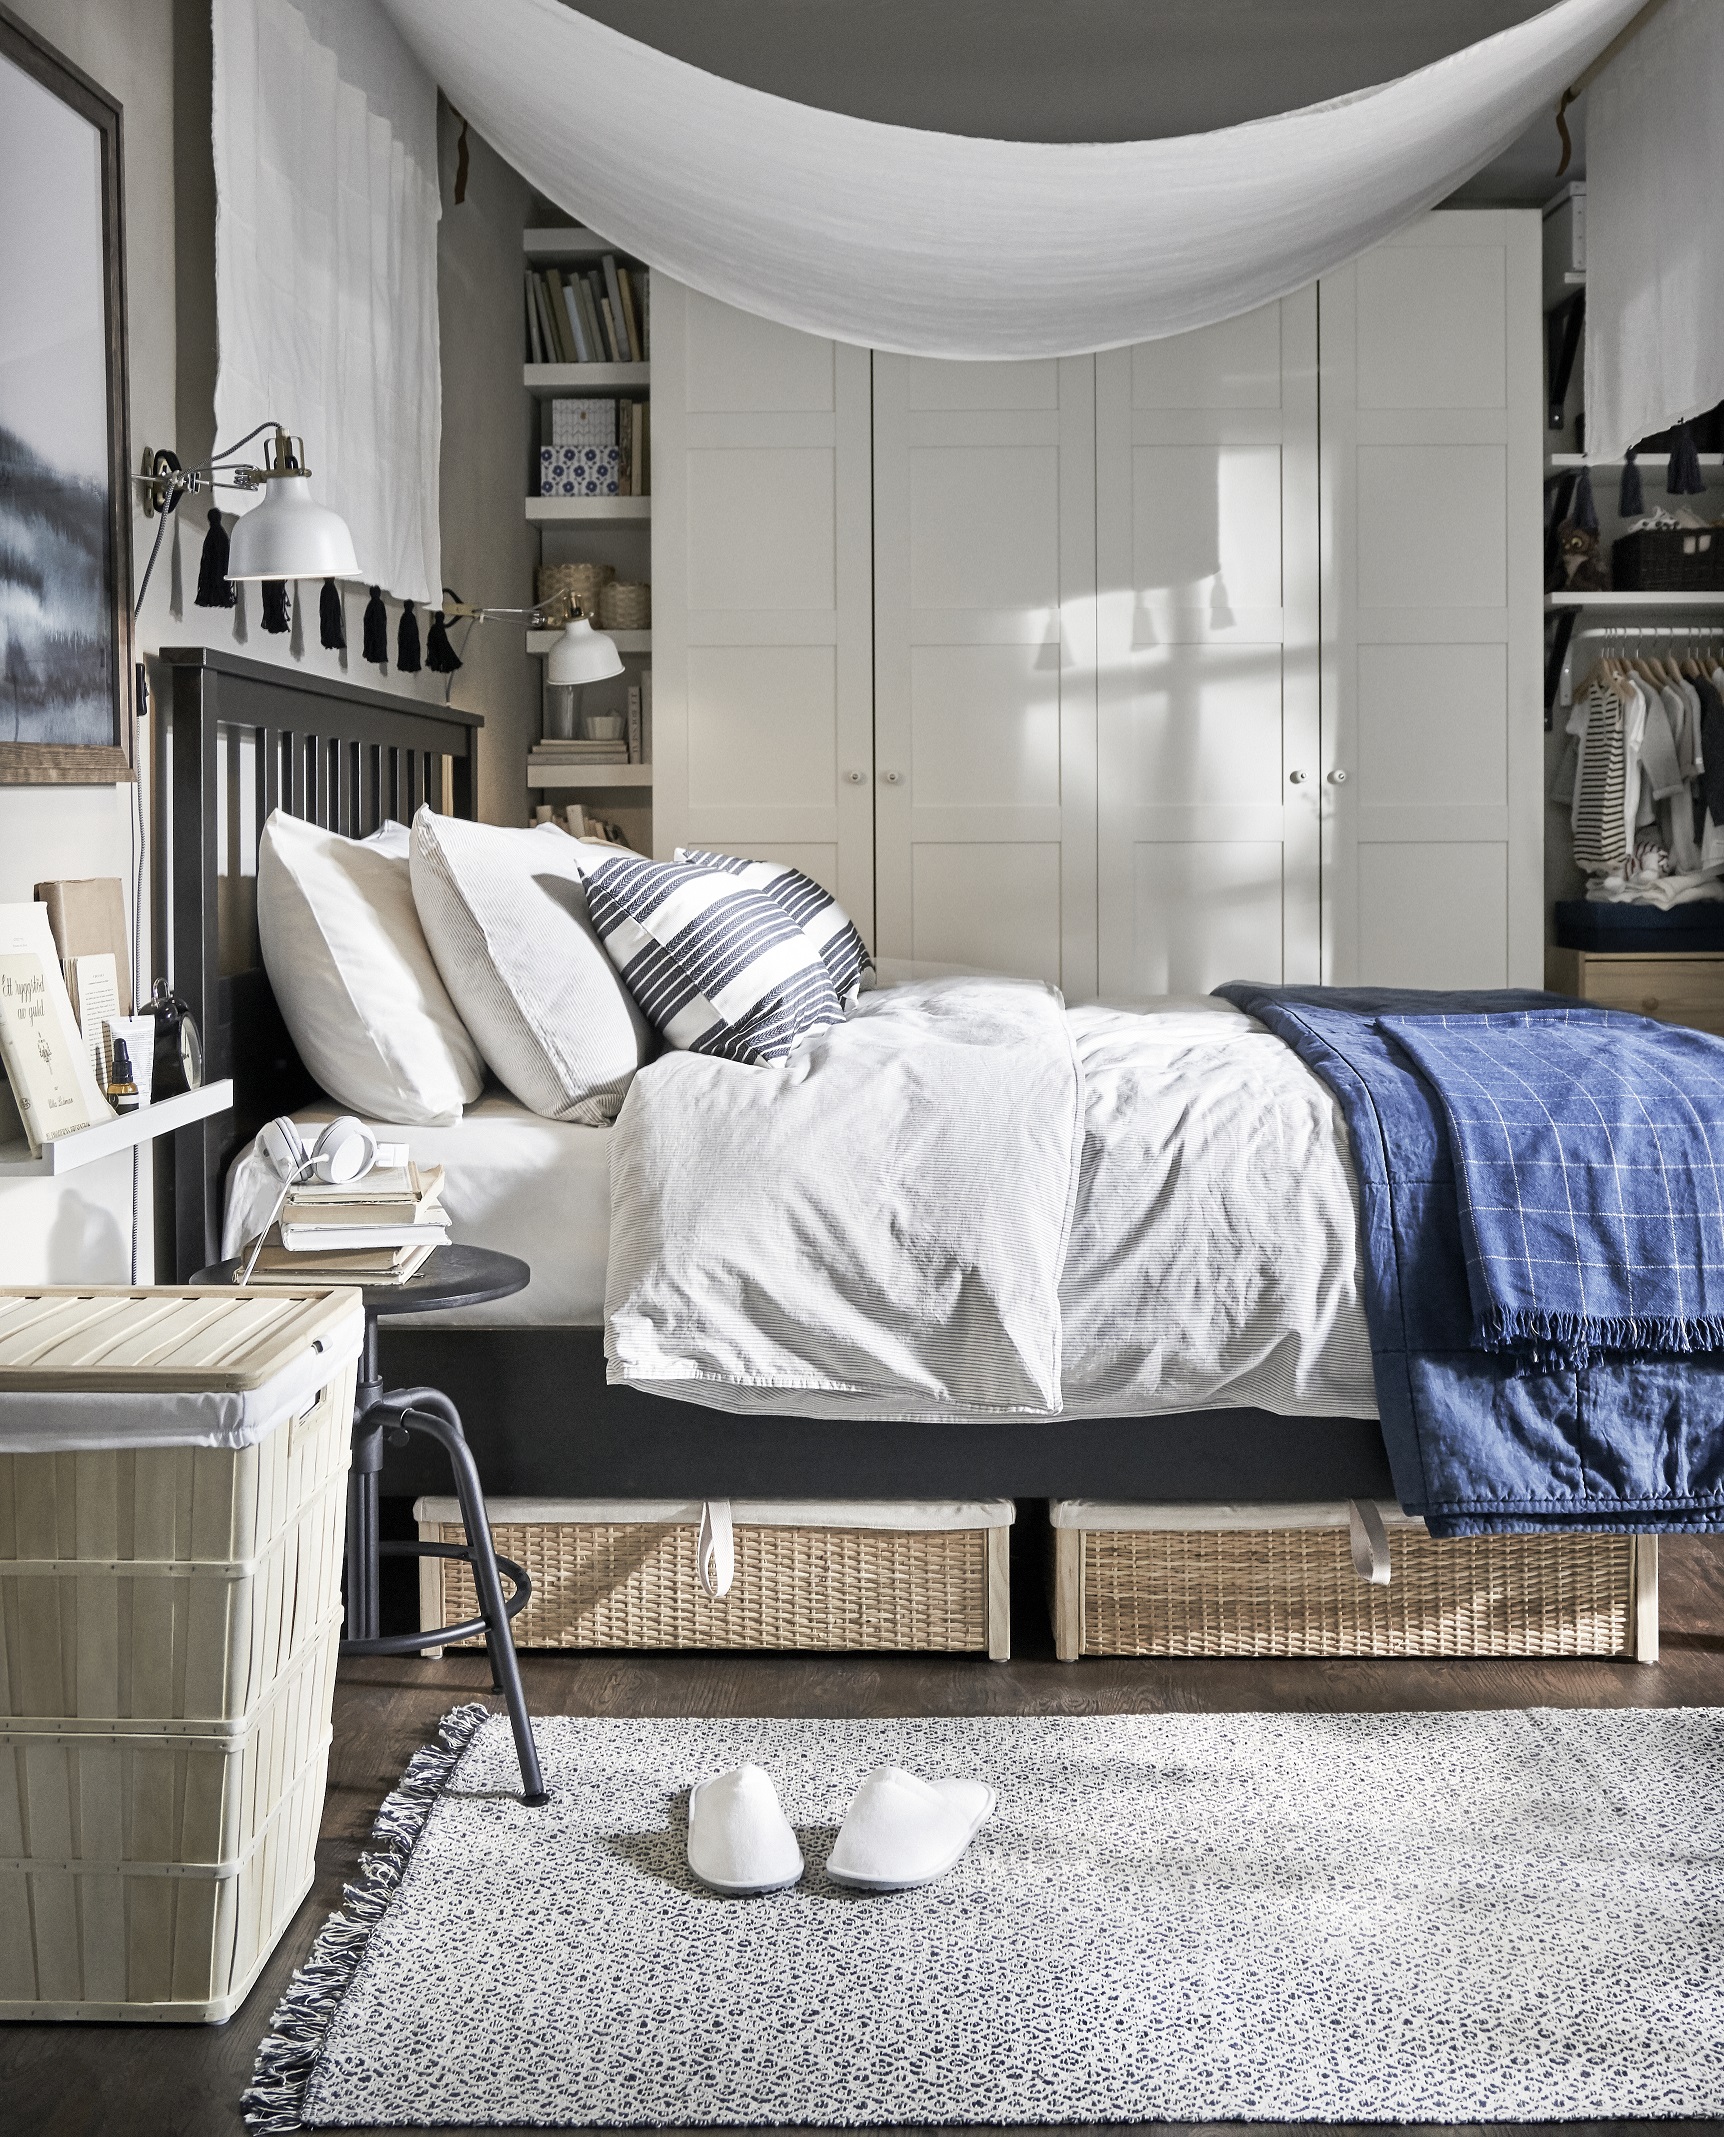  Ikea Bedroom Ideas 2020 for Simple Design